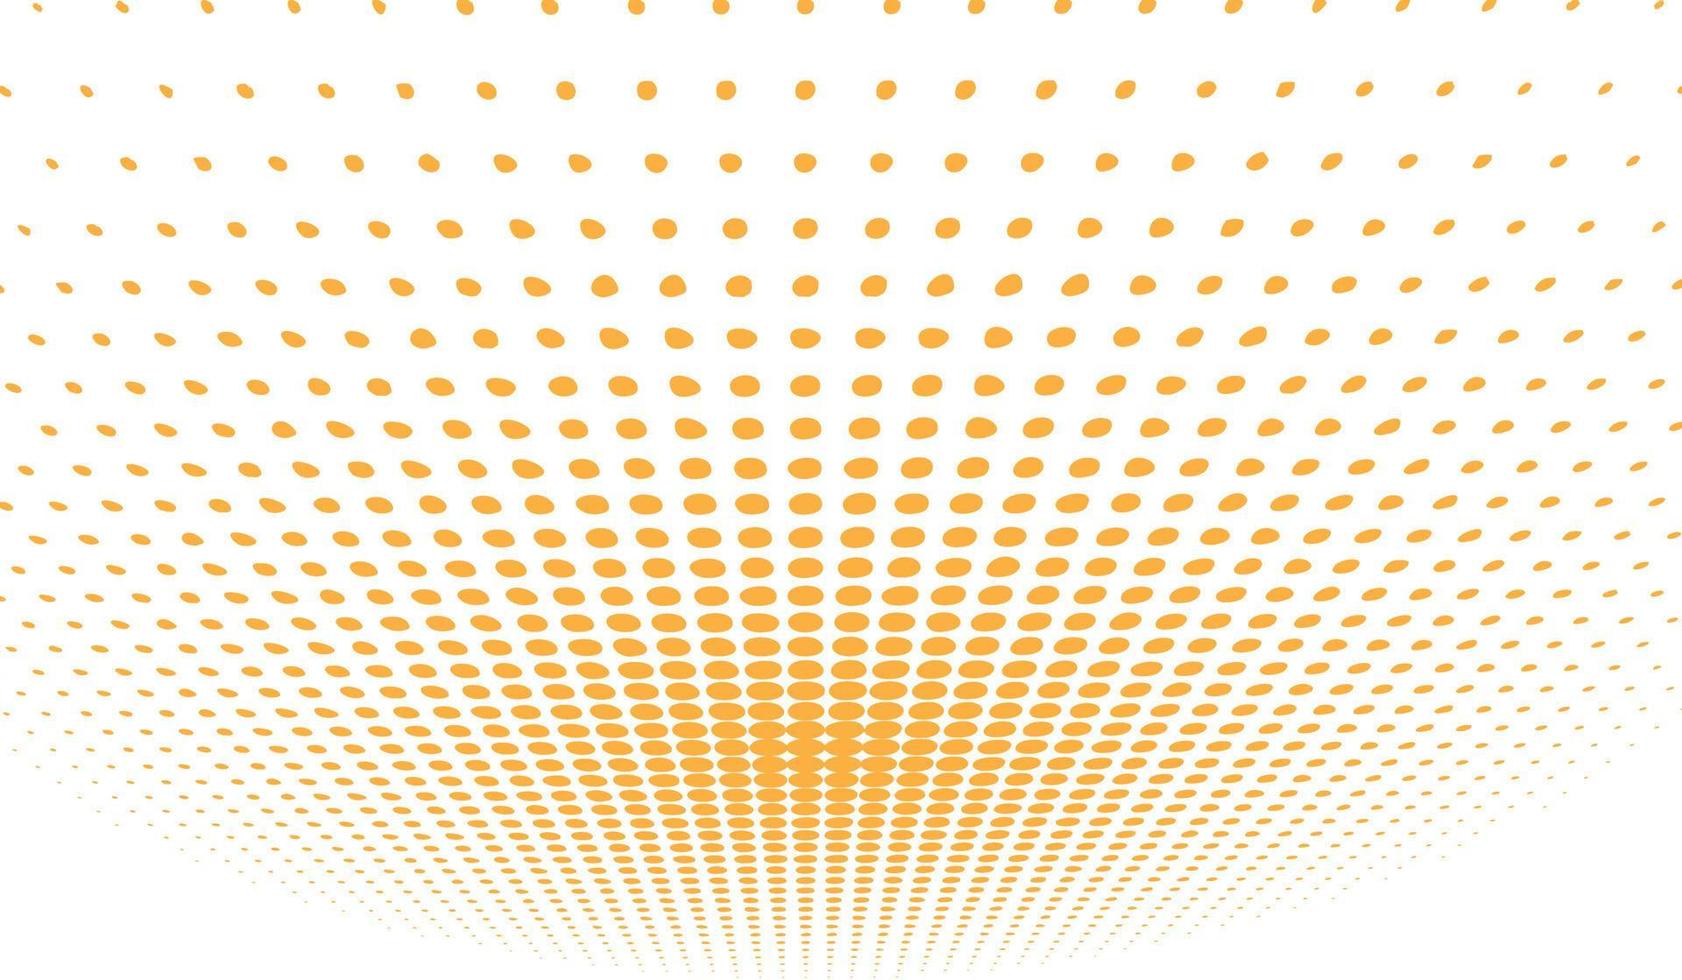 raggi solari digitali gialli. illustrazione vettoriale